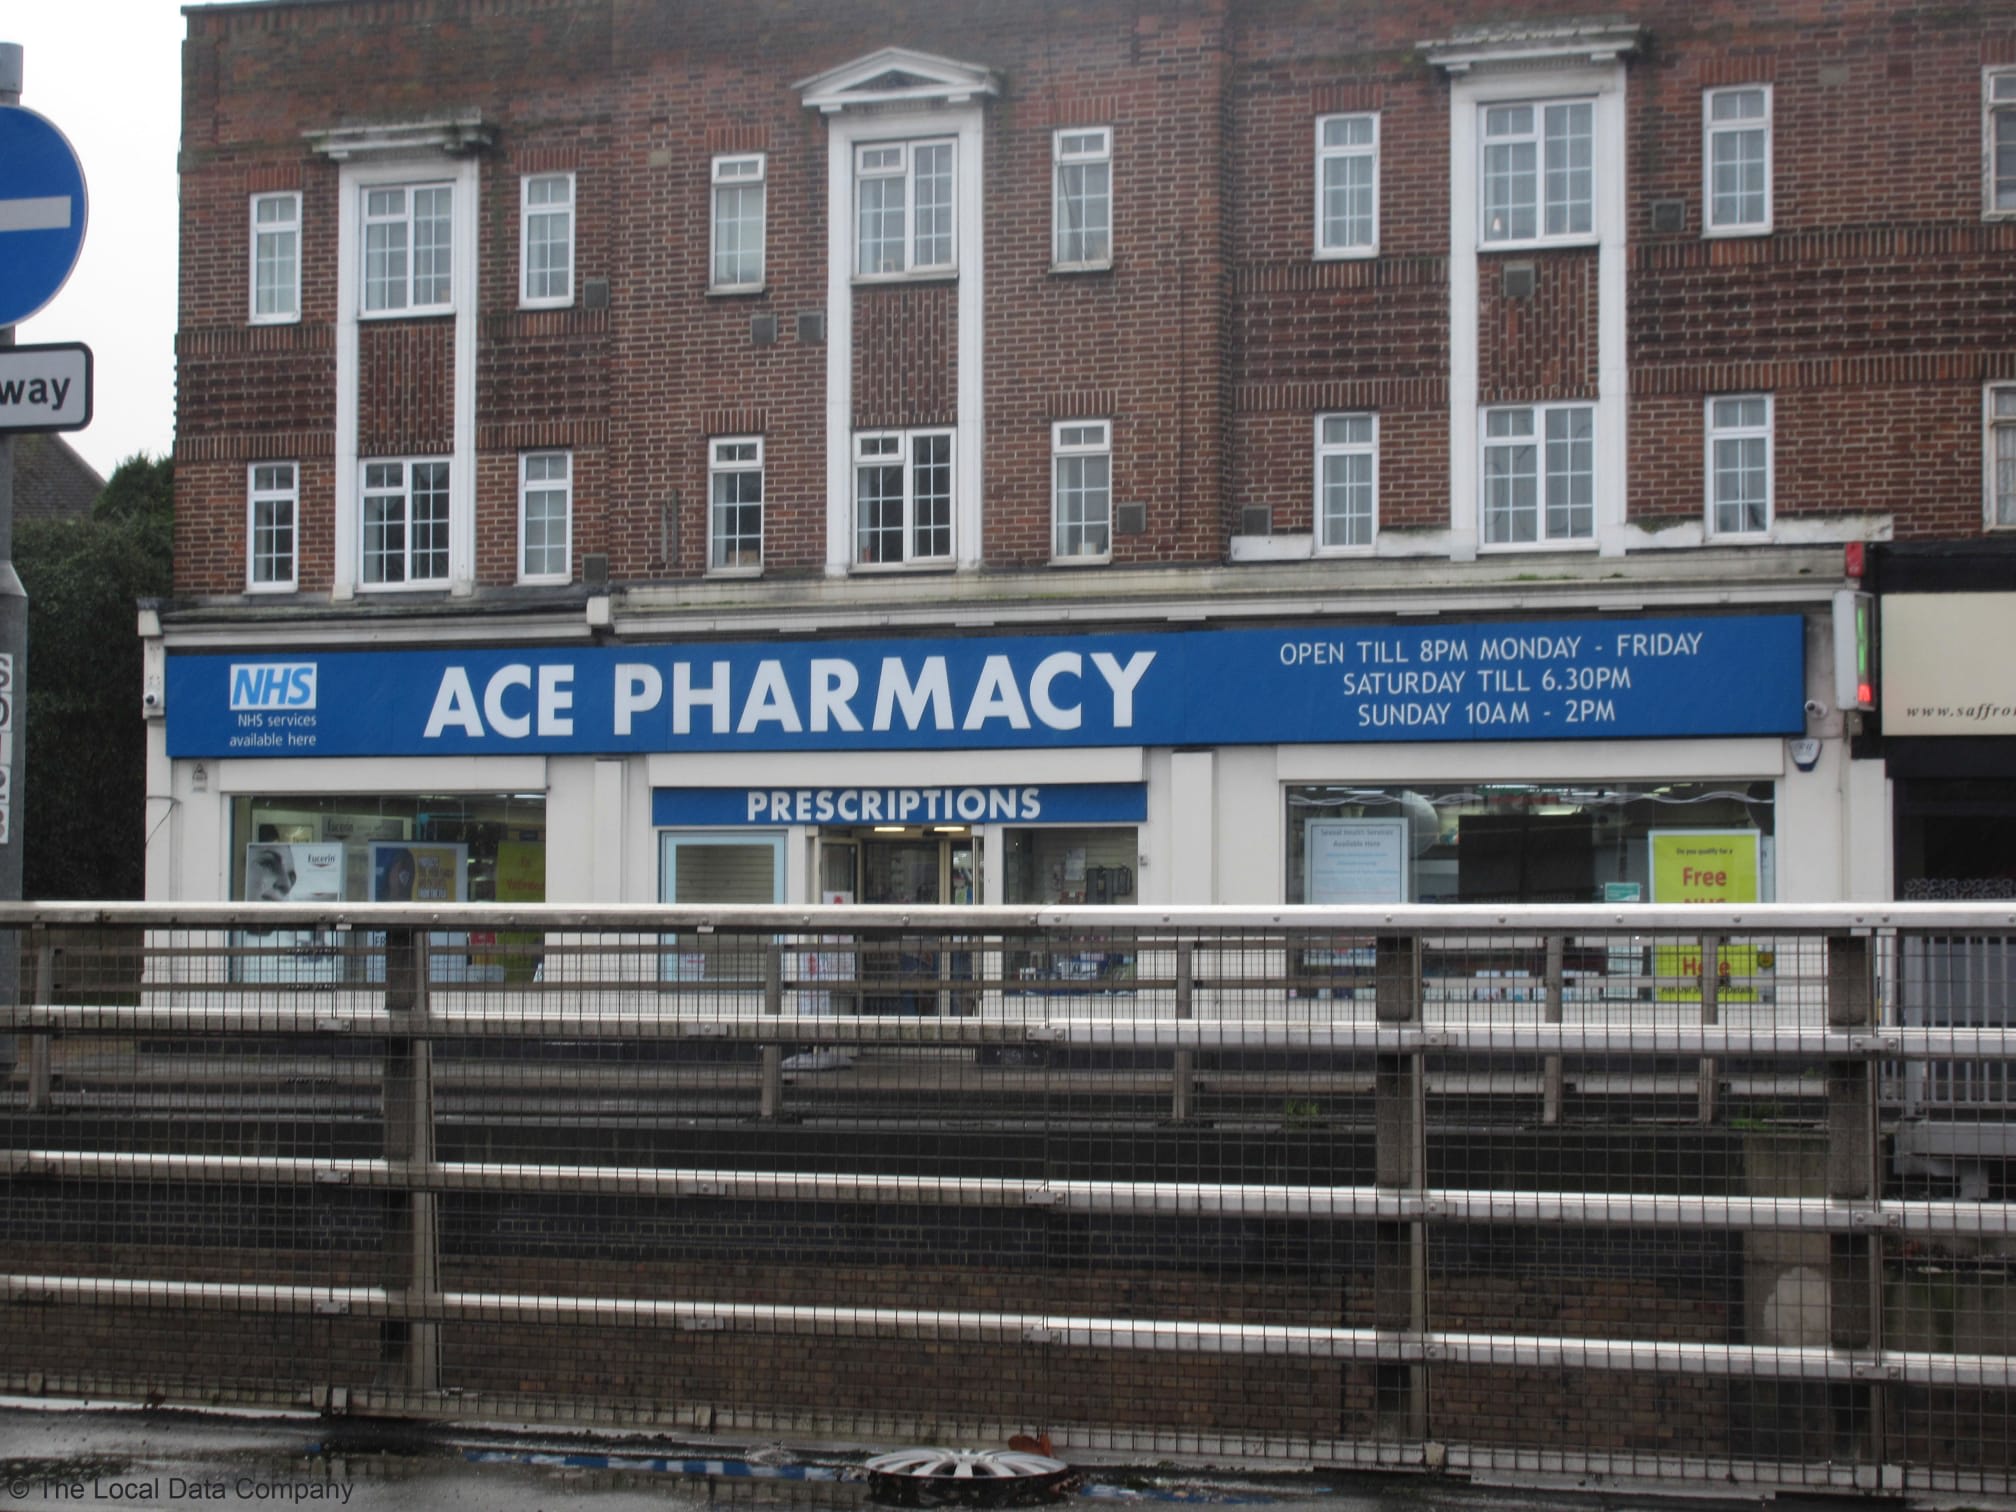 Ace Pharmacy Chessington 020 8397 4564